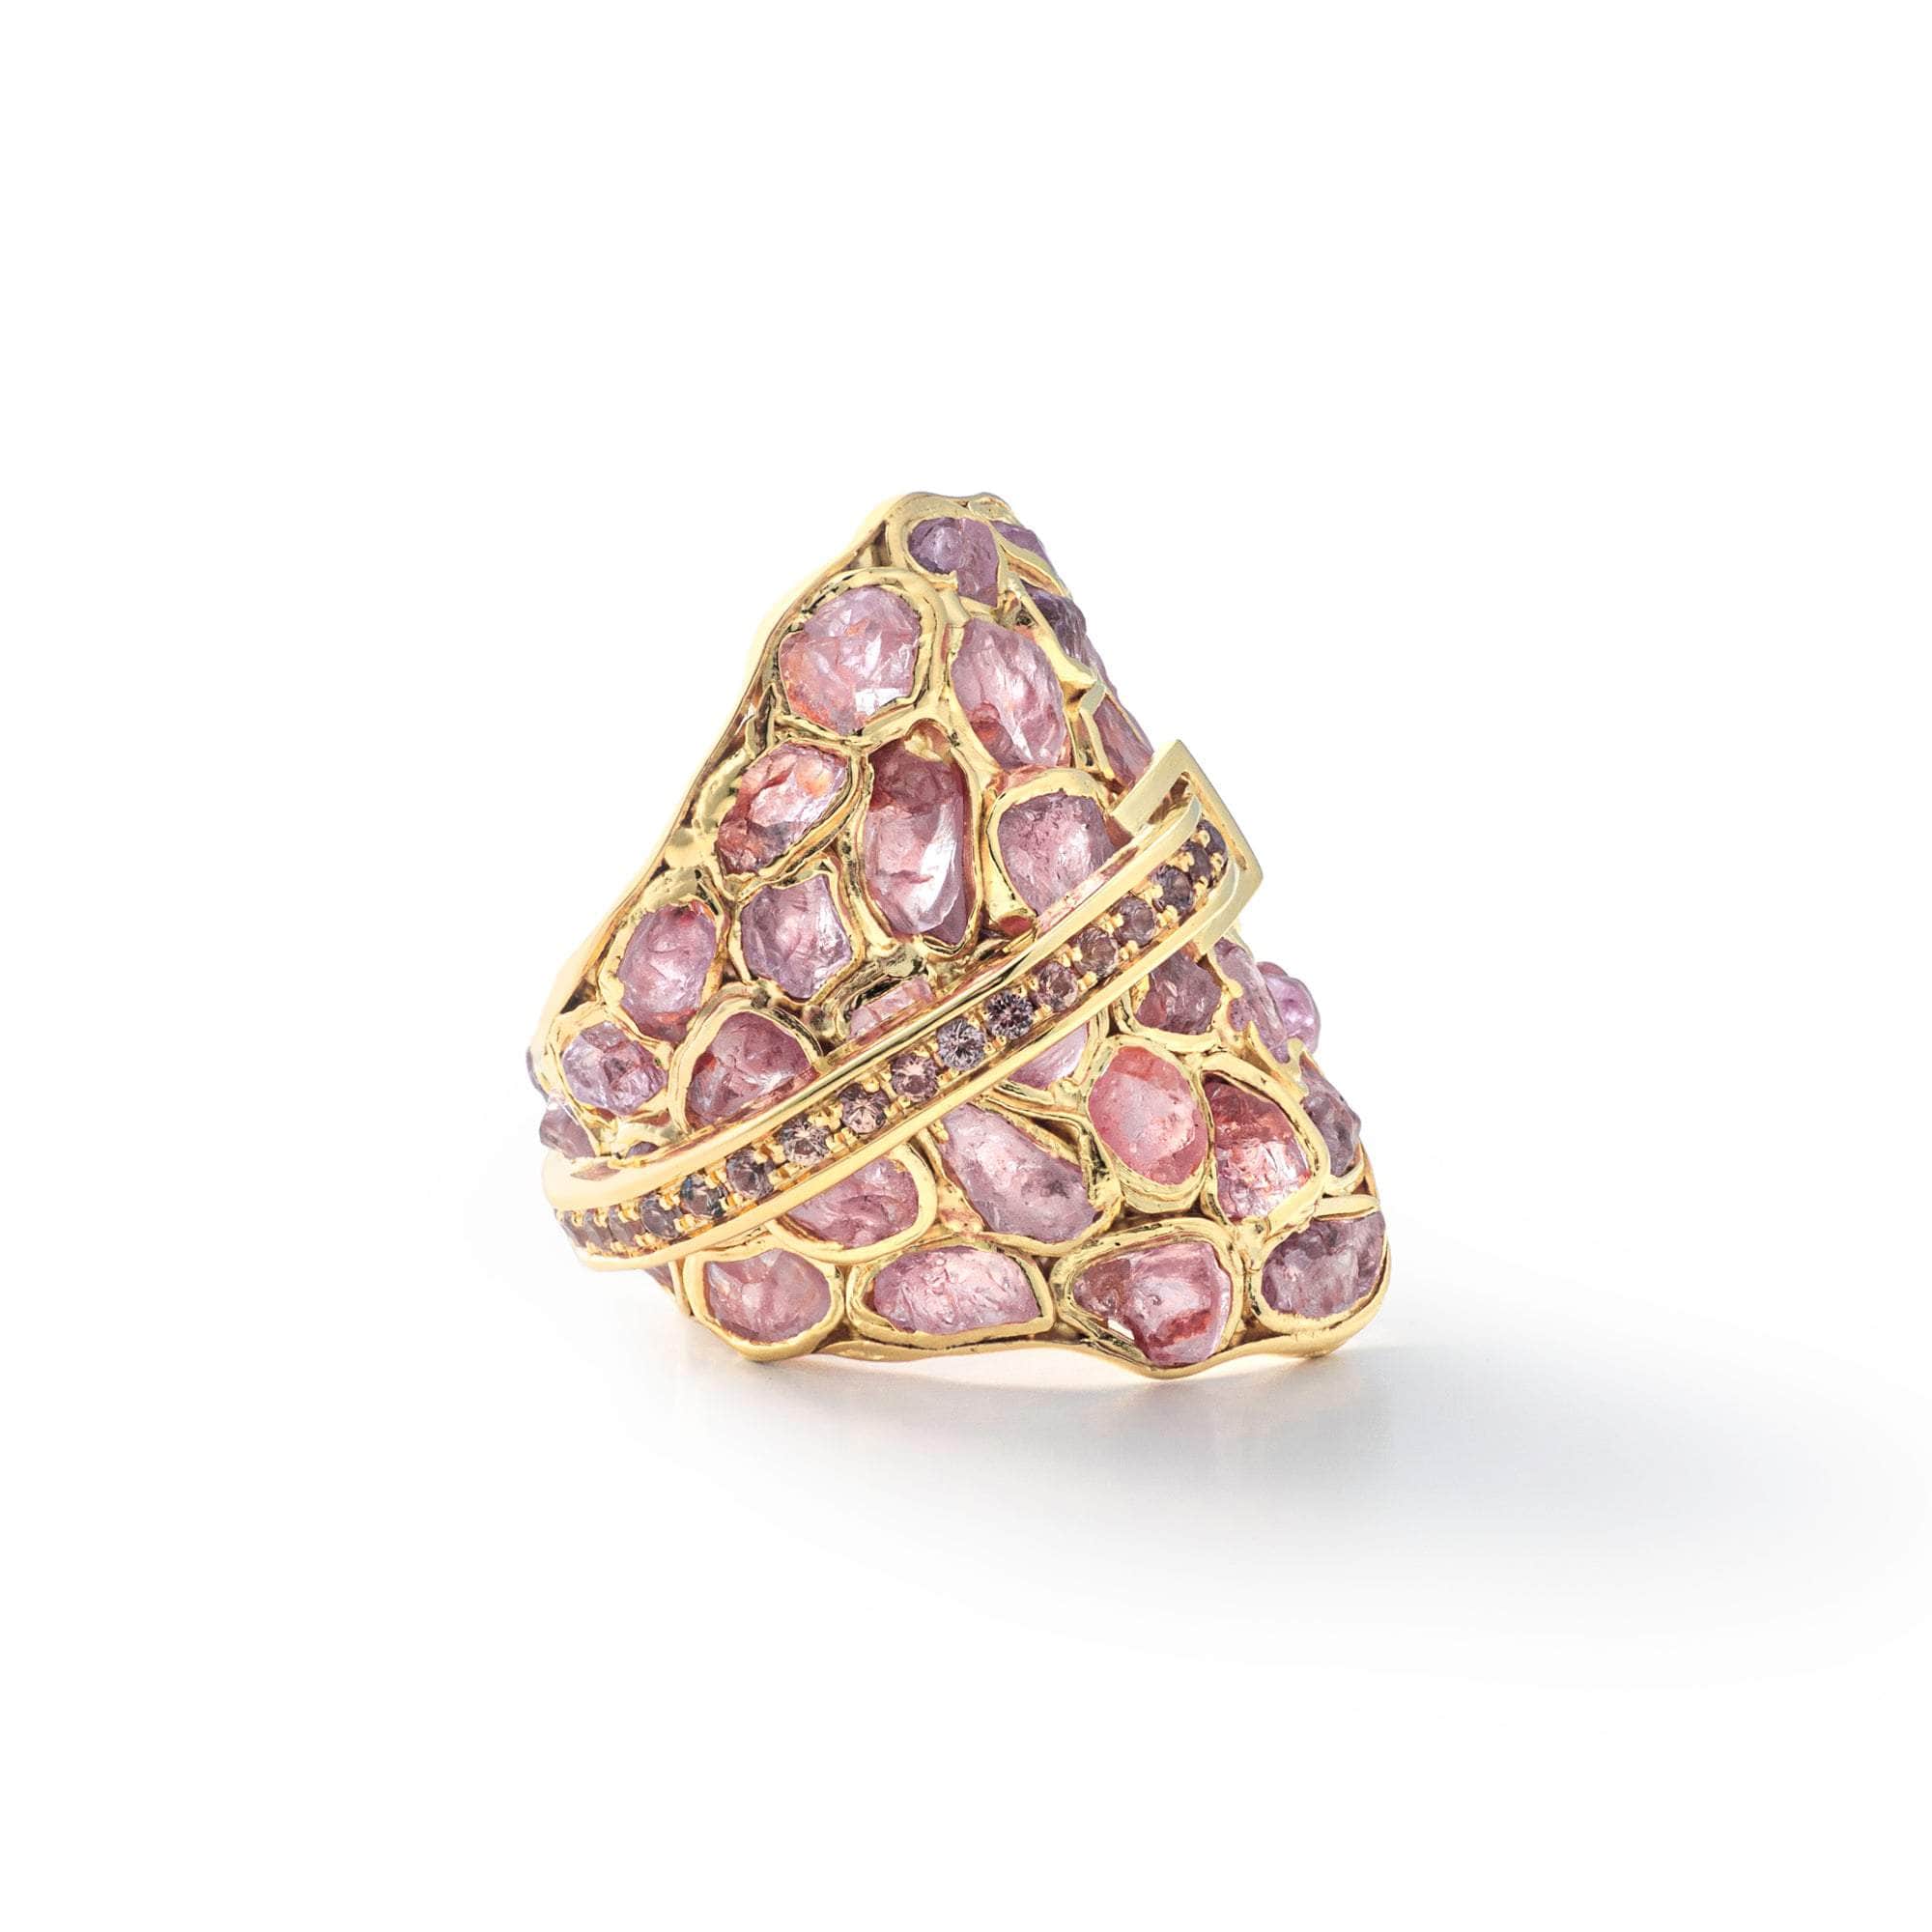 Lush Rough Pink Spinel and Pink Sapphire Ring GERMAN KABIRSKI